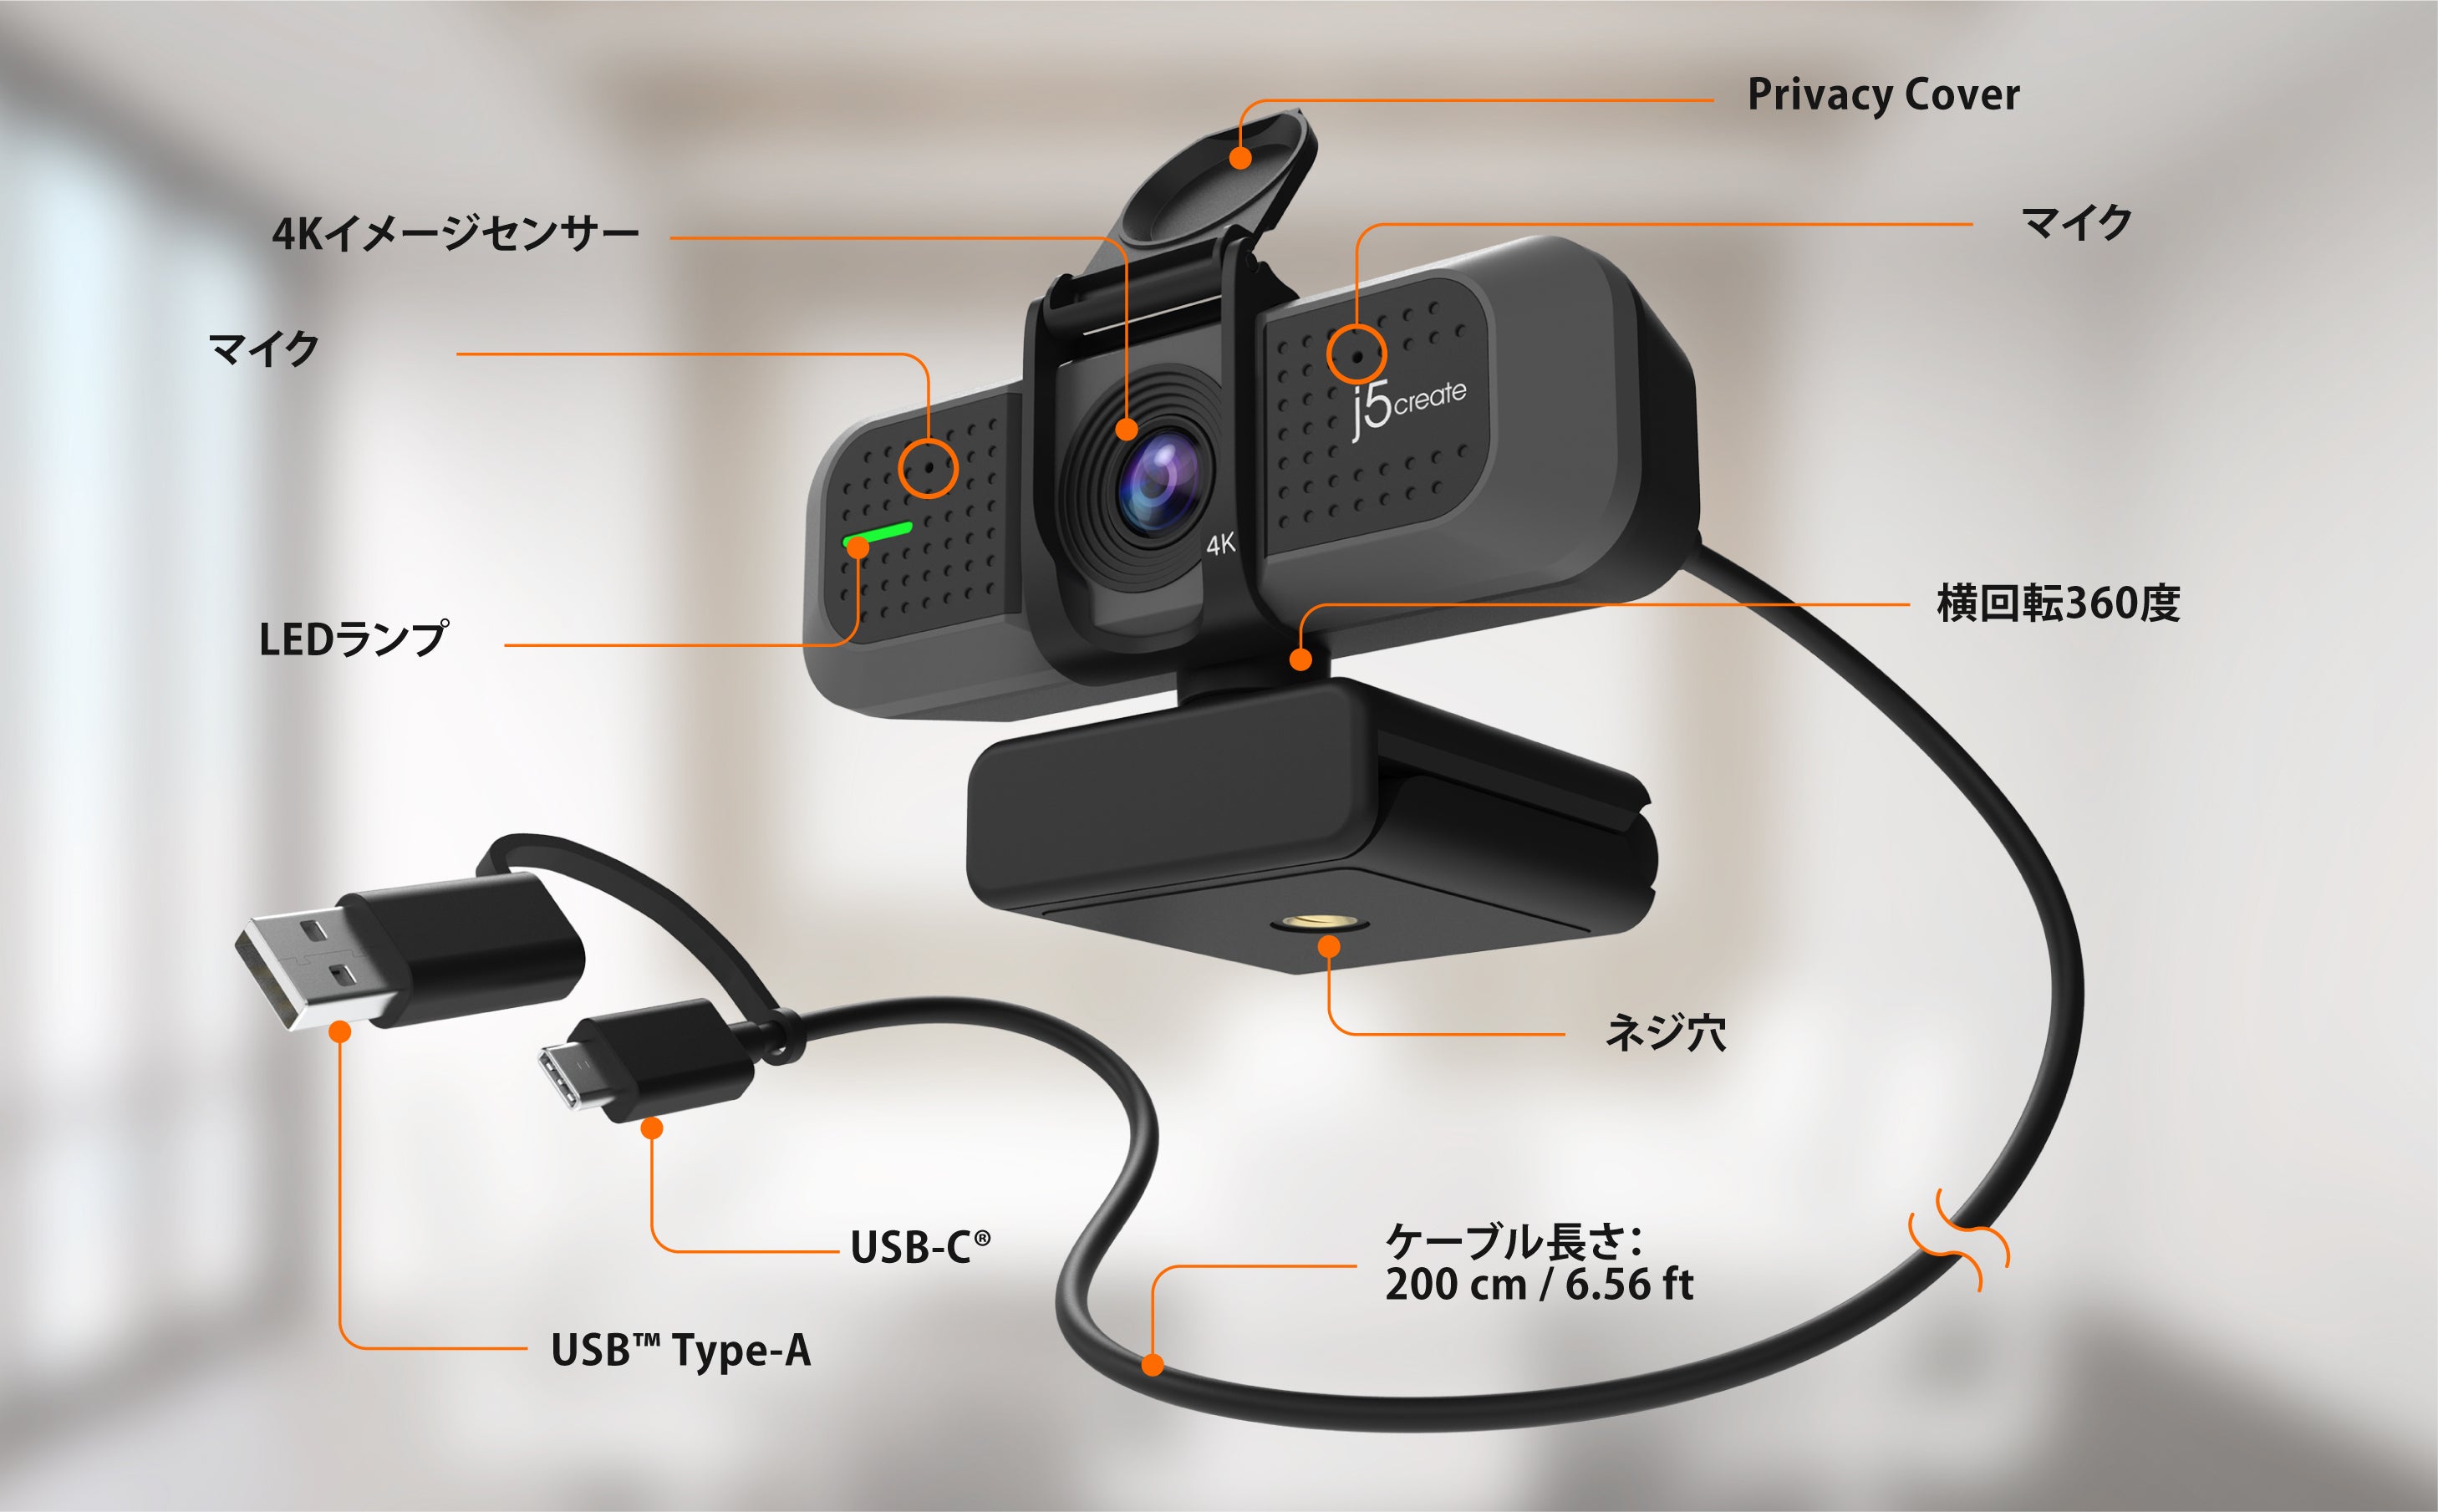 JVU430 USB 4K ULTRA HD Webカメラ (1080p 60fps対応) – new-jp-j5create